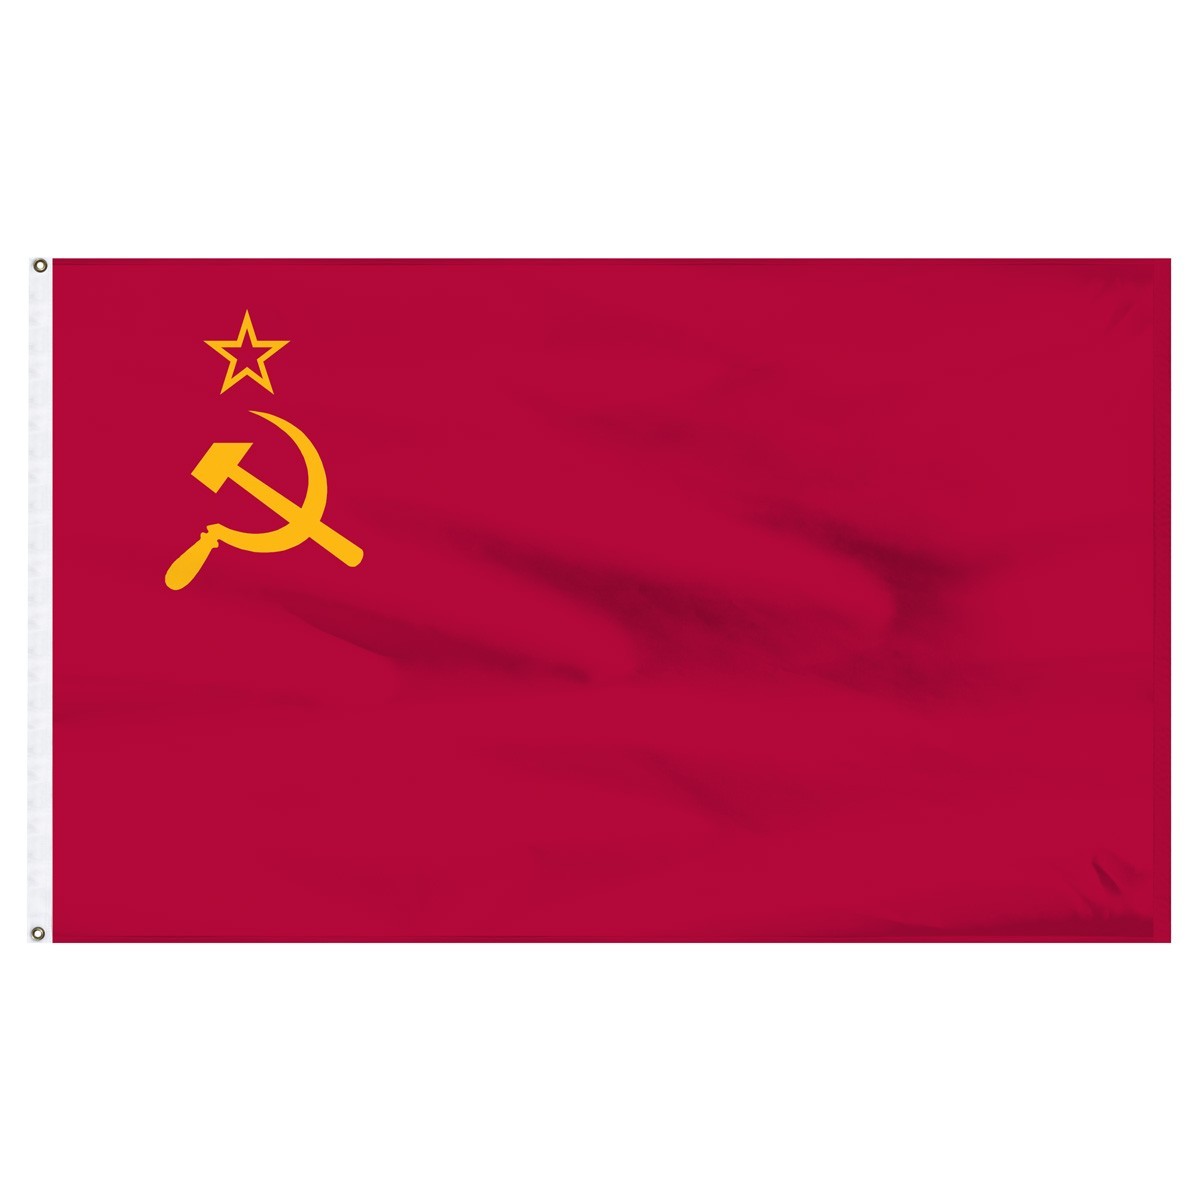 USSR 2ft x 3ft Outdoor Nylon Flag